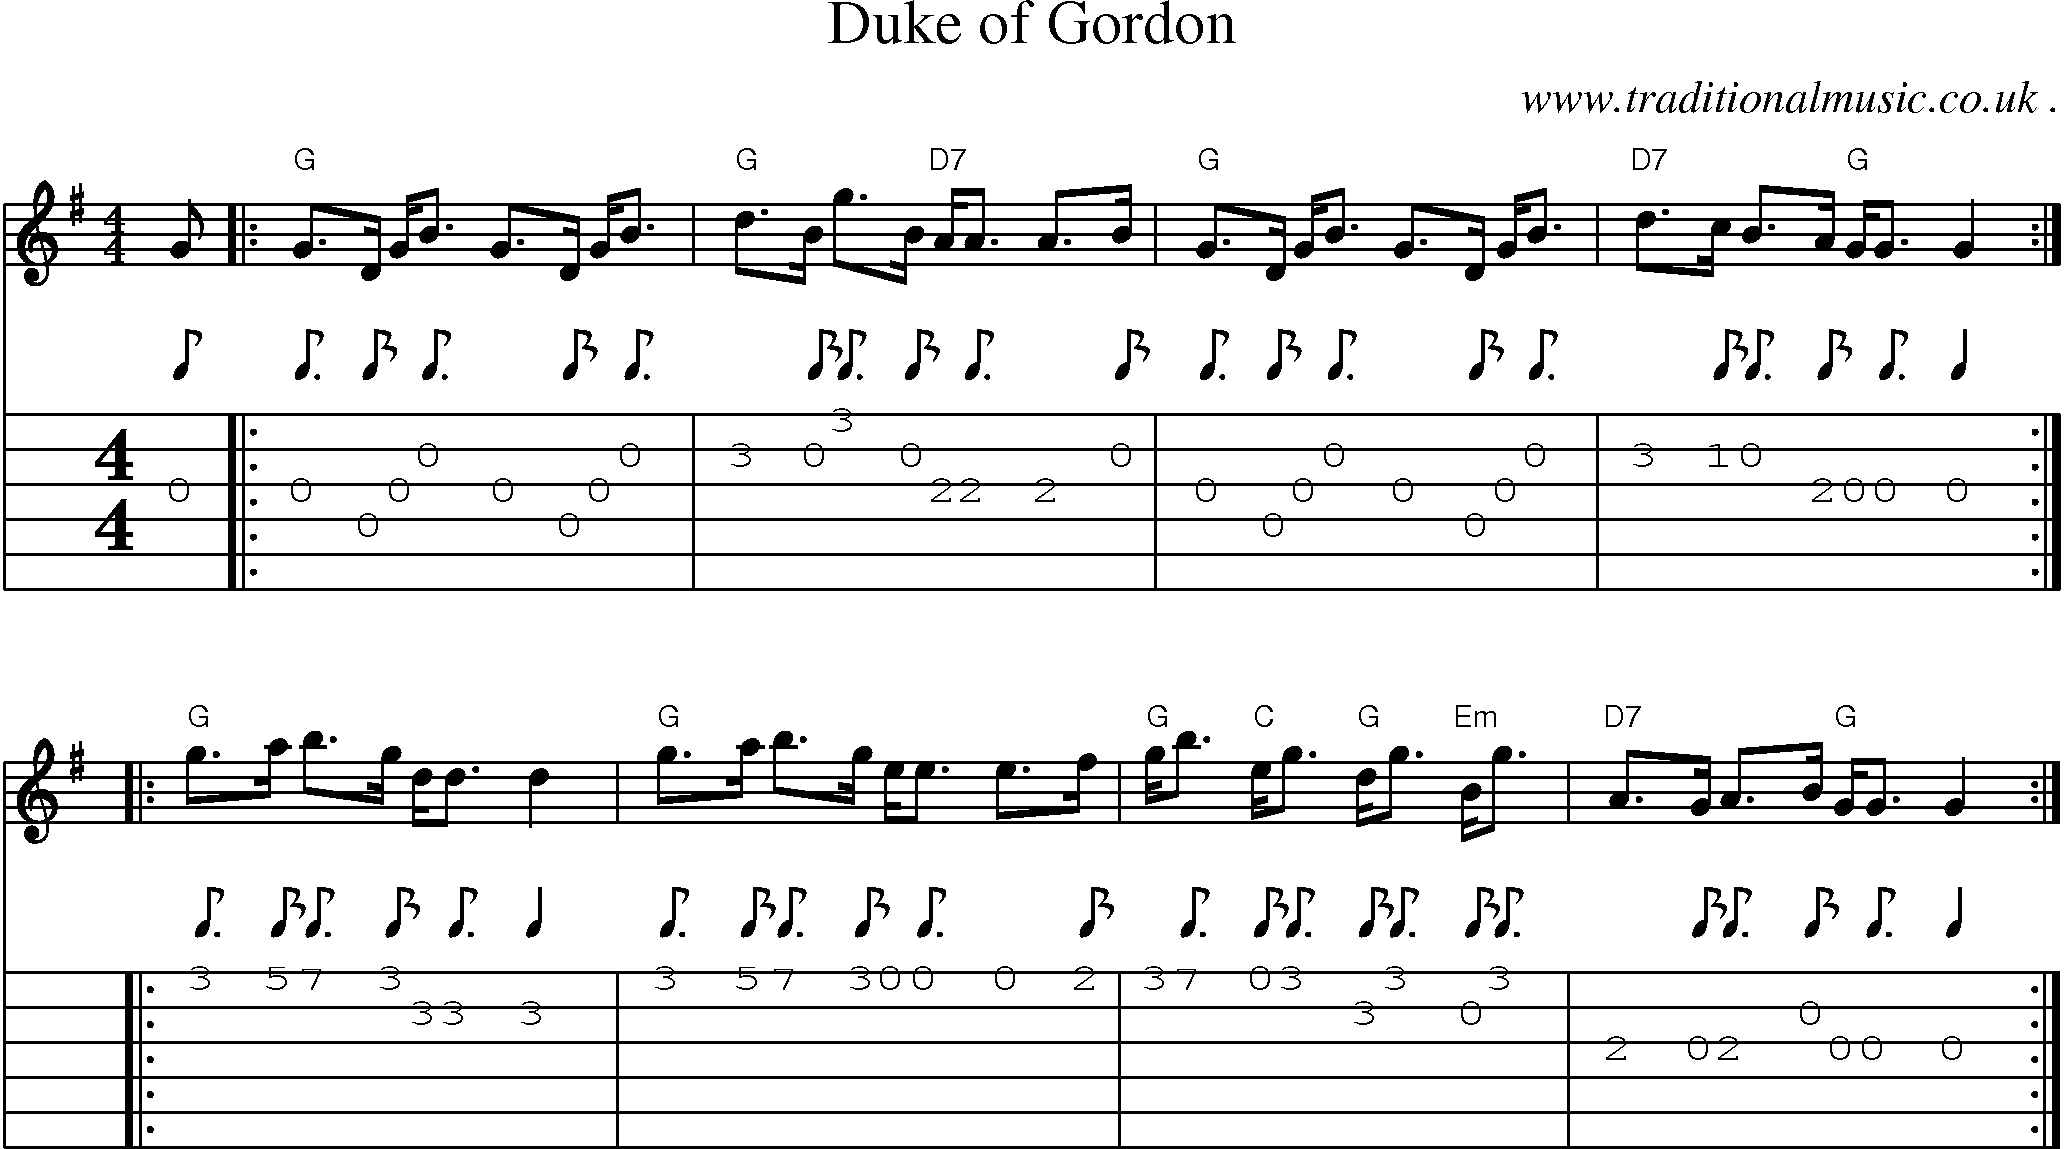 Sheet-music  score, Chords and Guitar Tabs for Duke Of Gordon